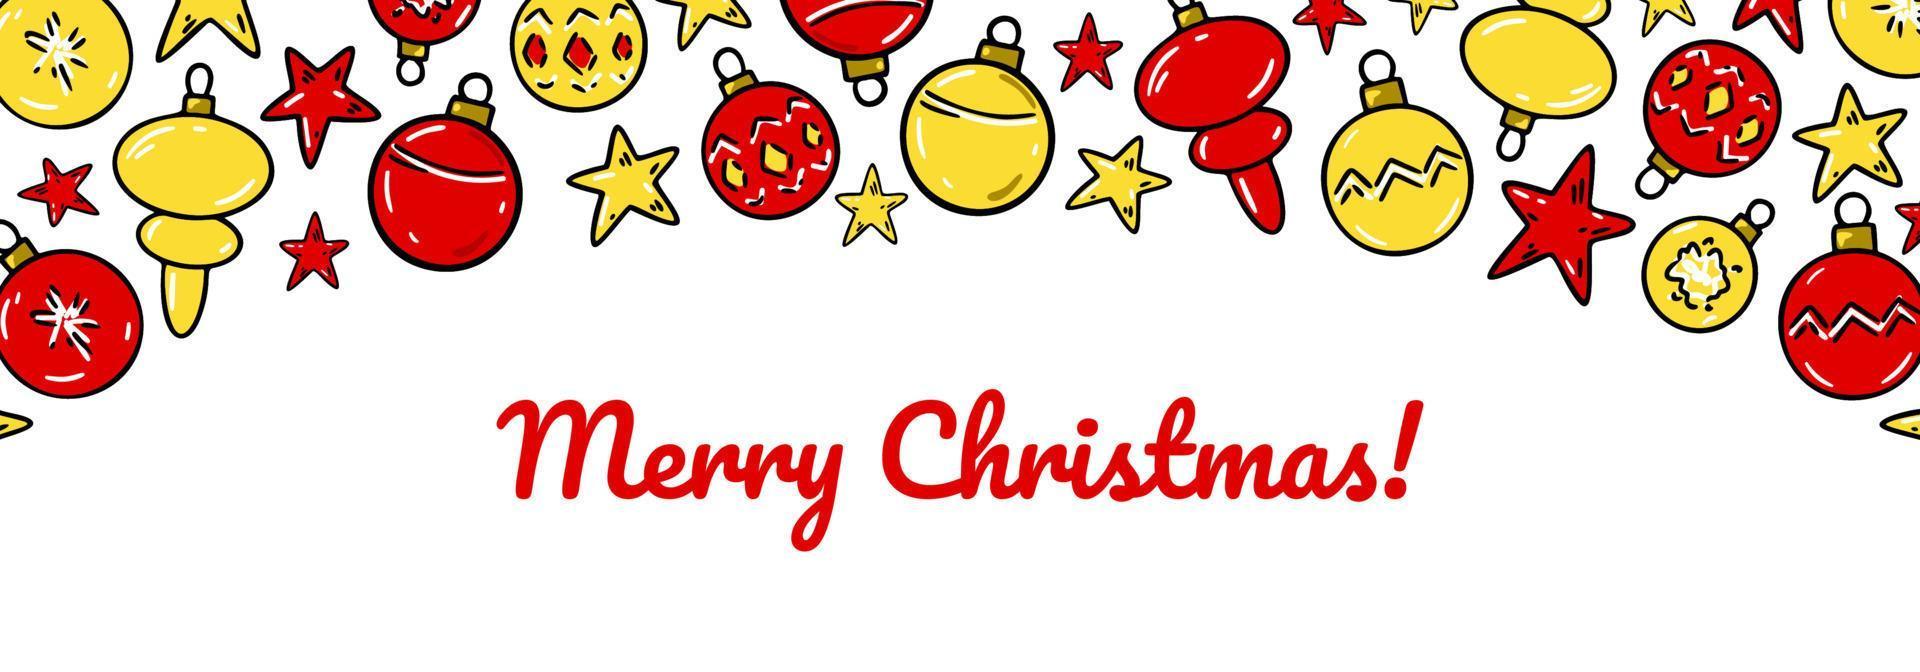 kleurrijke horizontale prettige kerstdagen en gelukkig nieuwjaar wenskaart met heldere kerstboom speelgoed. hand getekende vectorillustratie vector